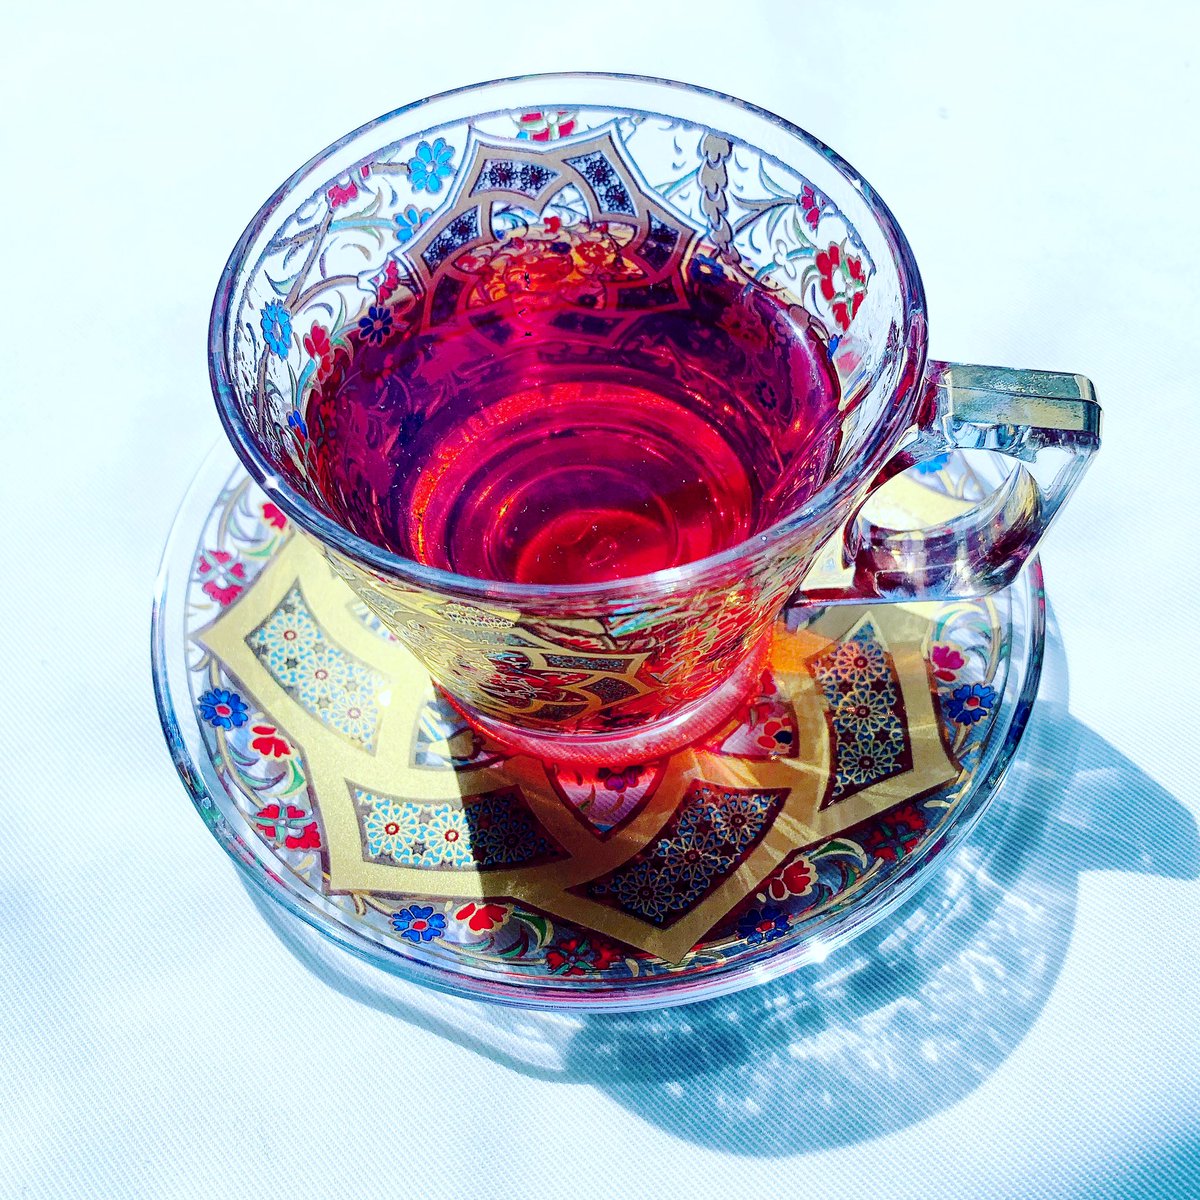 𝓨𝓪𝓼 青ヰ 鱗 在 Twitter 上 赤い紅茶をトルコグラスに注いだらとても綺麗だった T Co 2yoiu4xwe2 Twitter